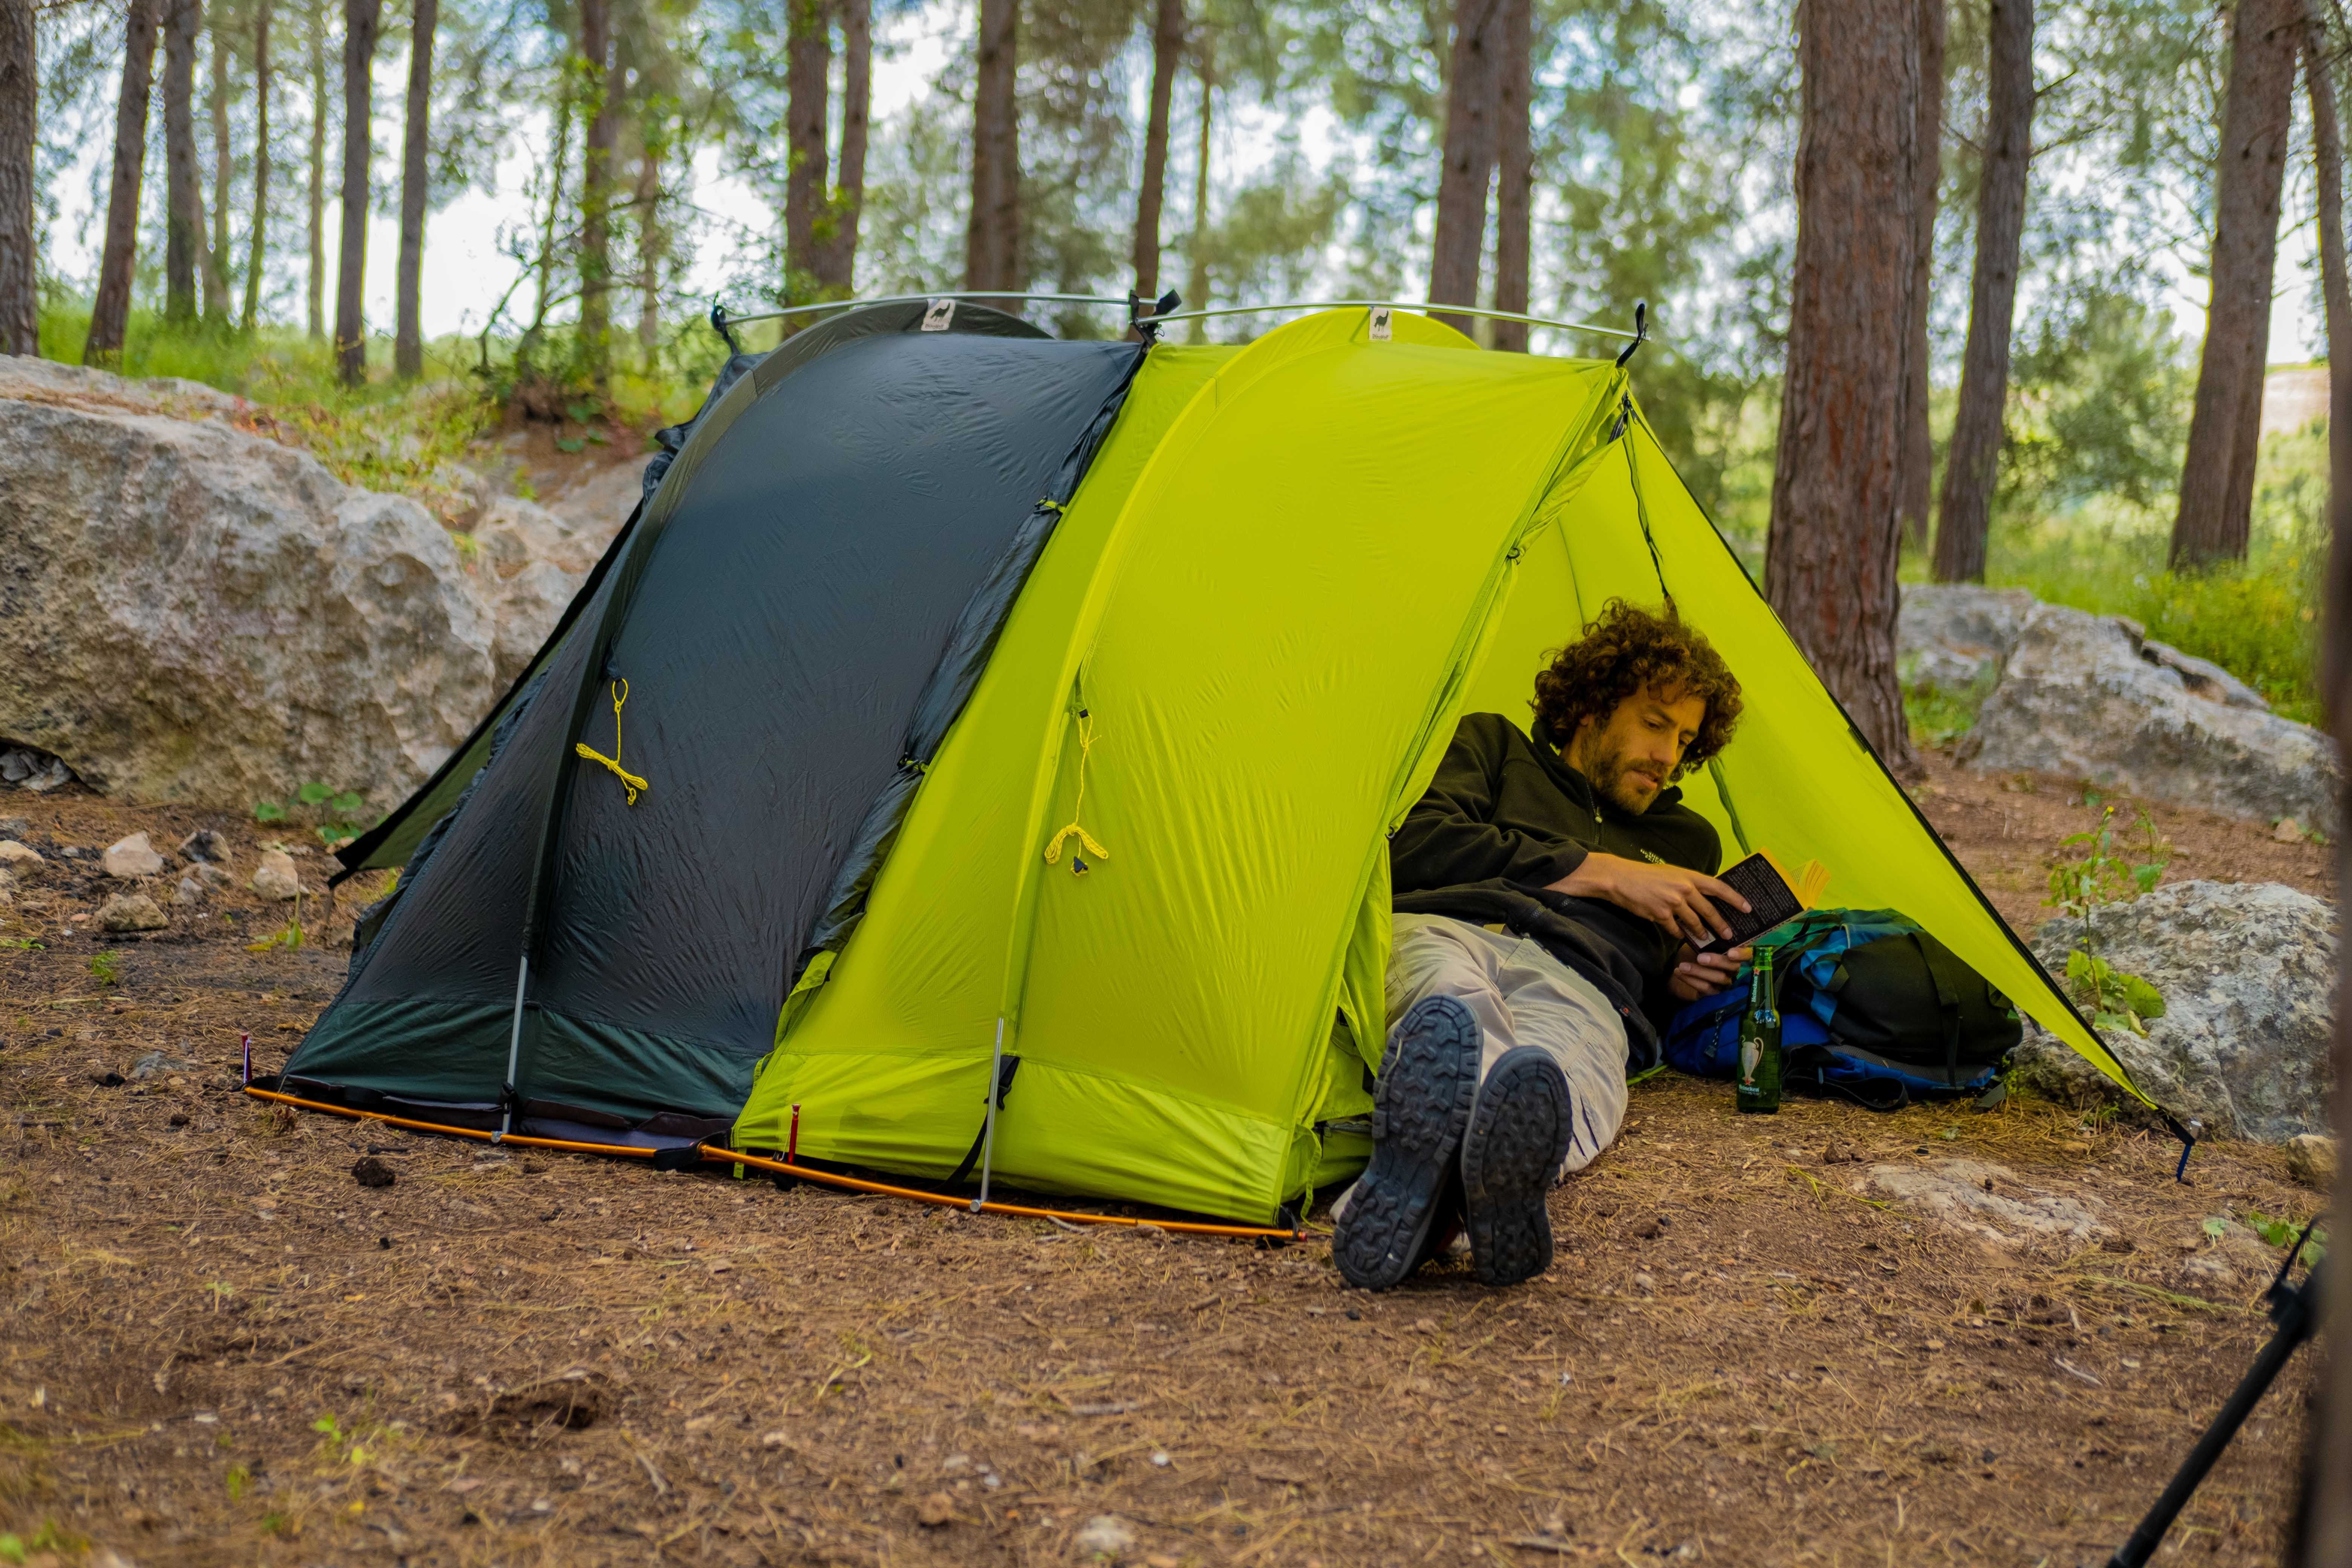 Camping with extend. “Modular Tent System” палатки. Спать в палатке. Палатки для кемпинга. Ночевка в палатке.